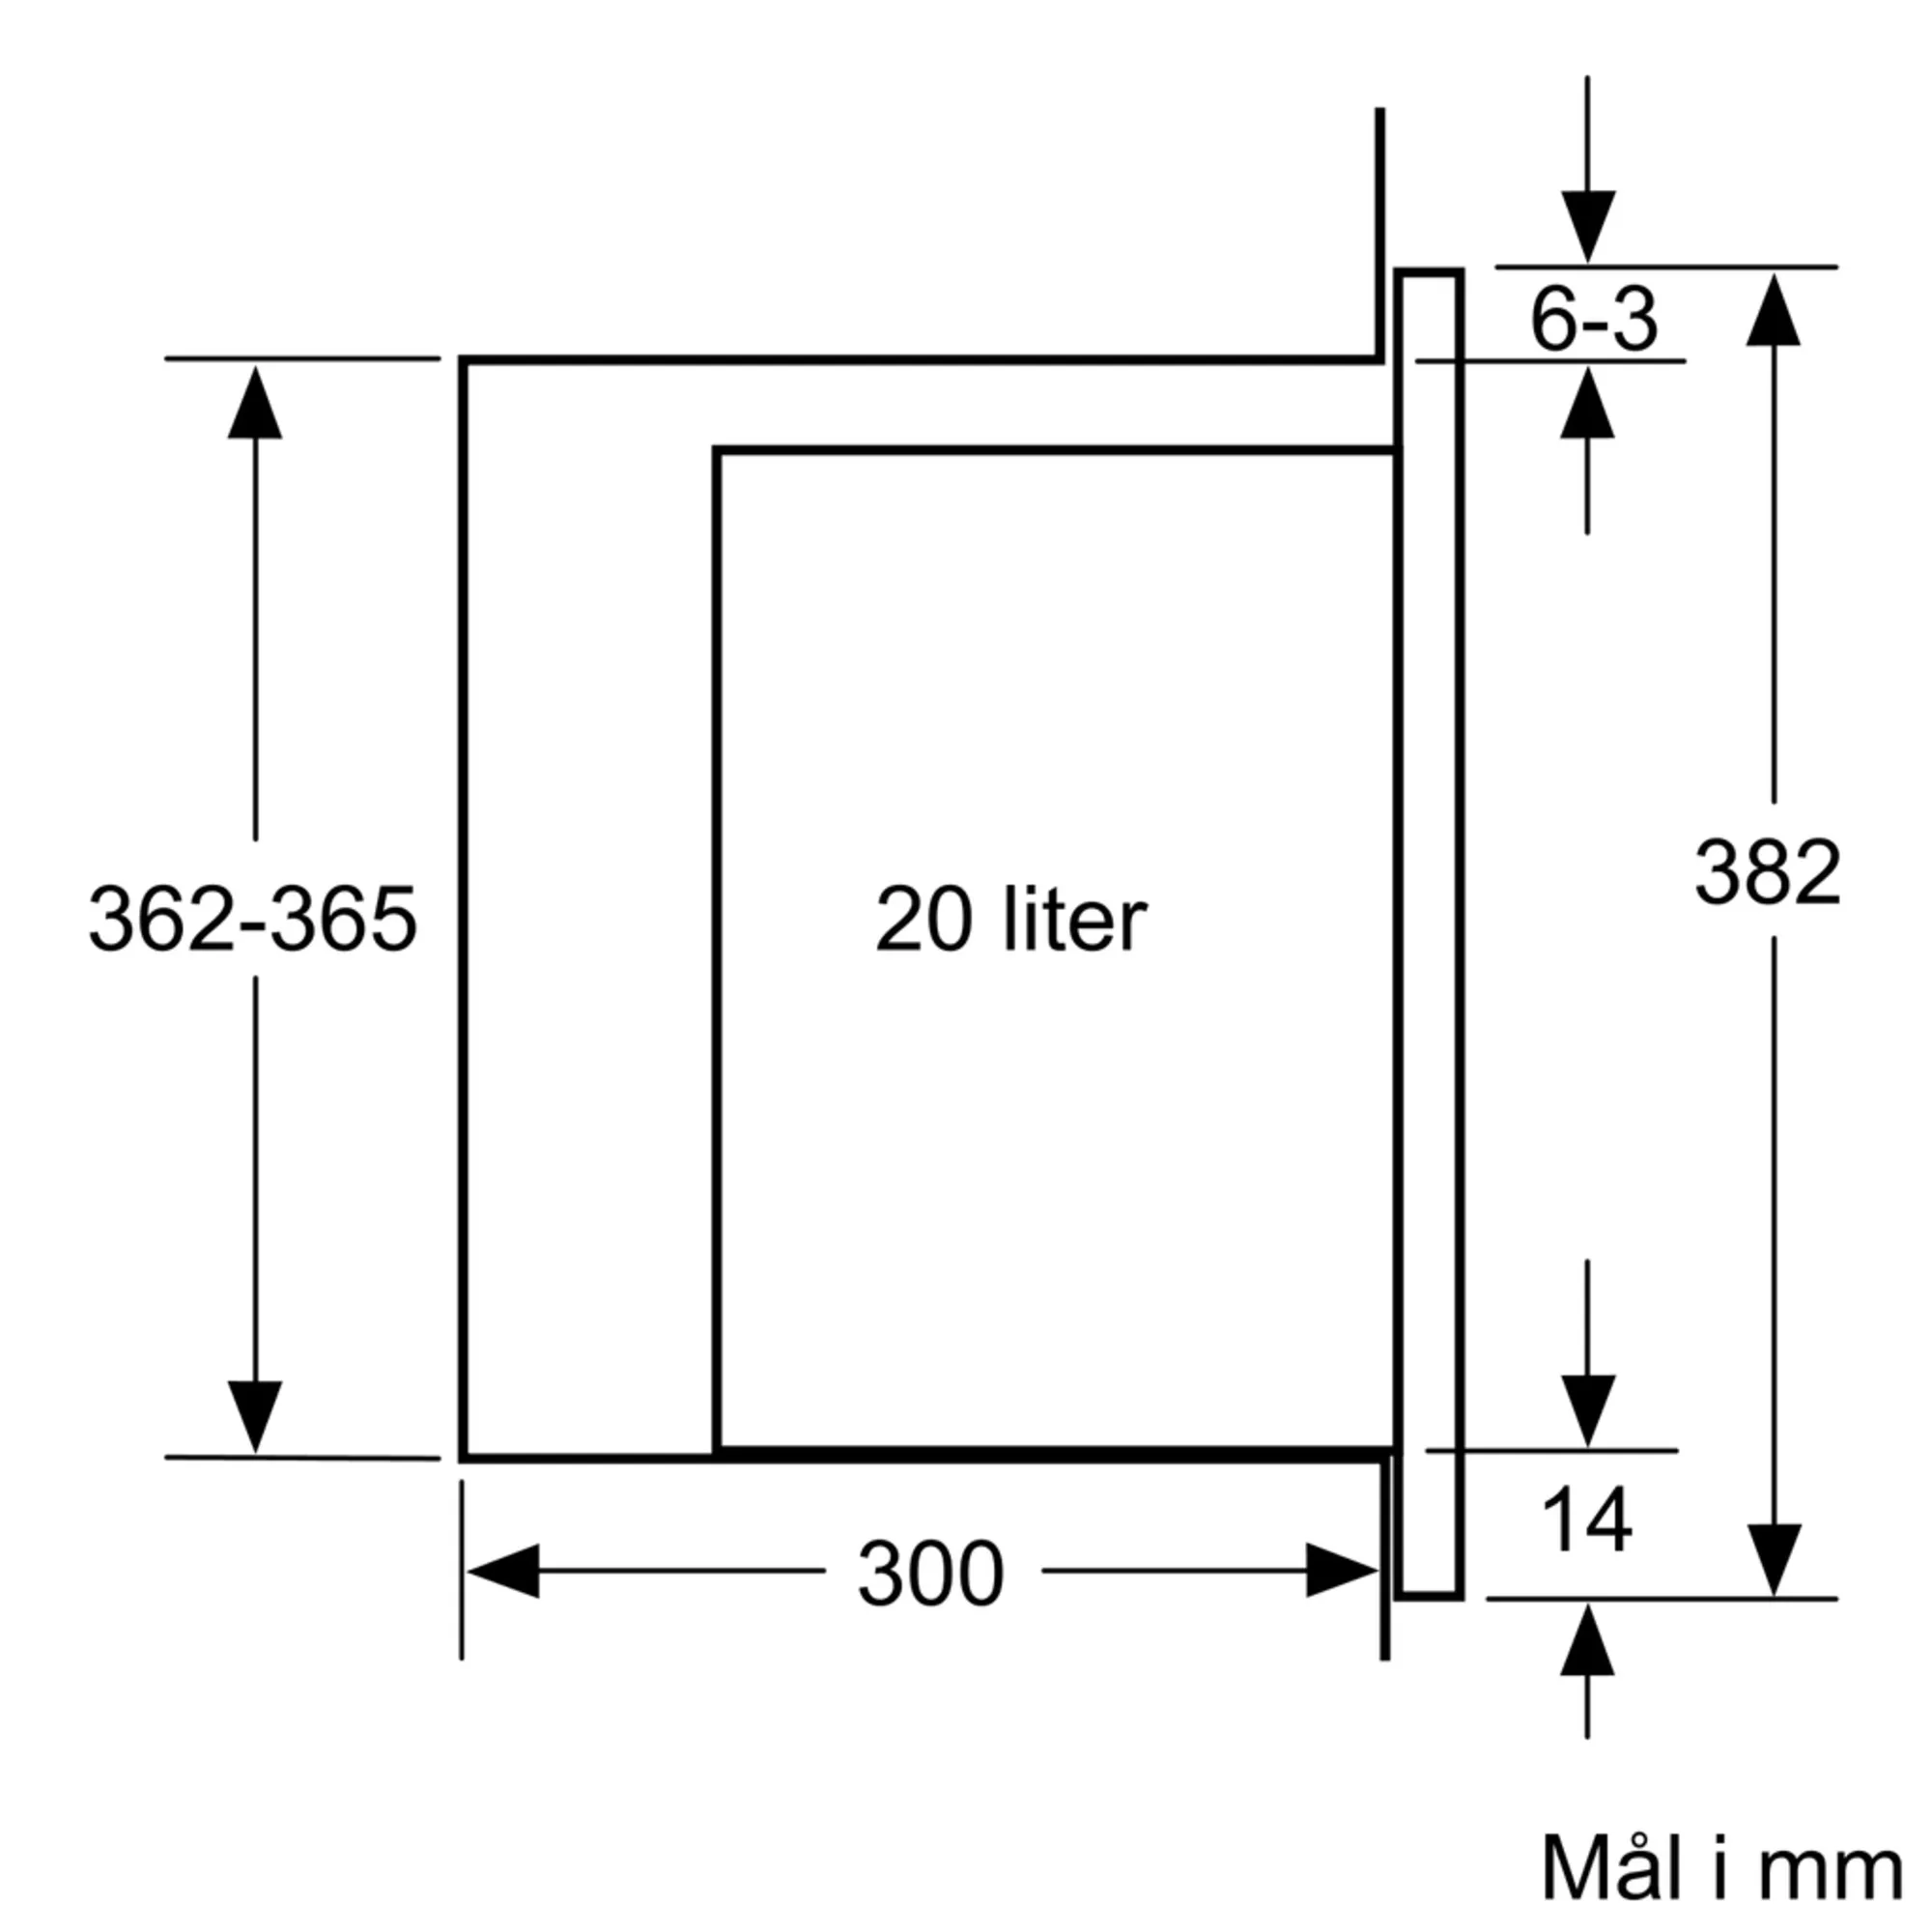 Bilde nr. 7 av produktet BFL523MS0